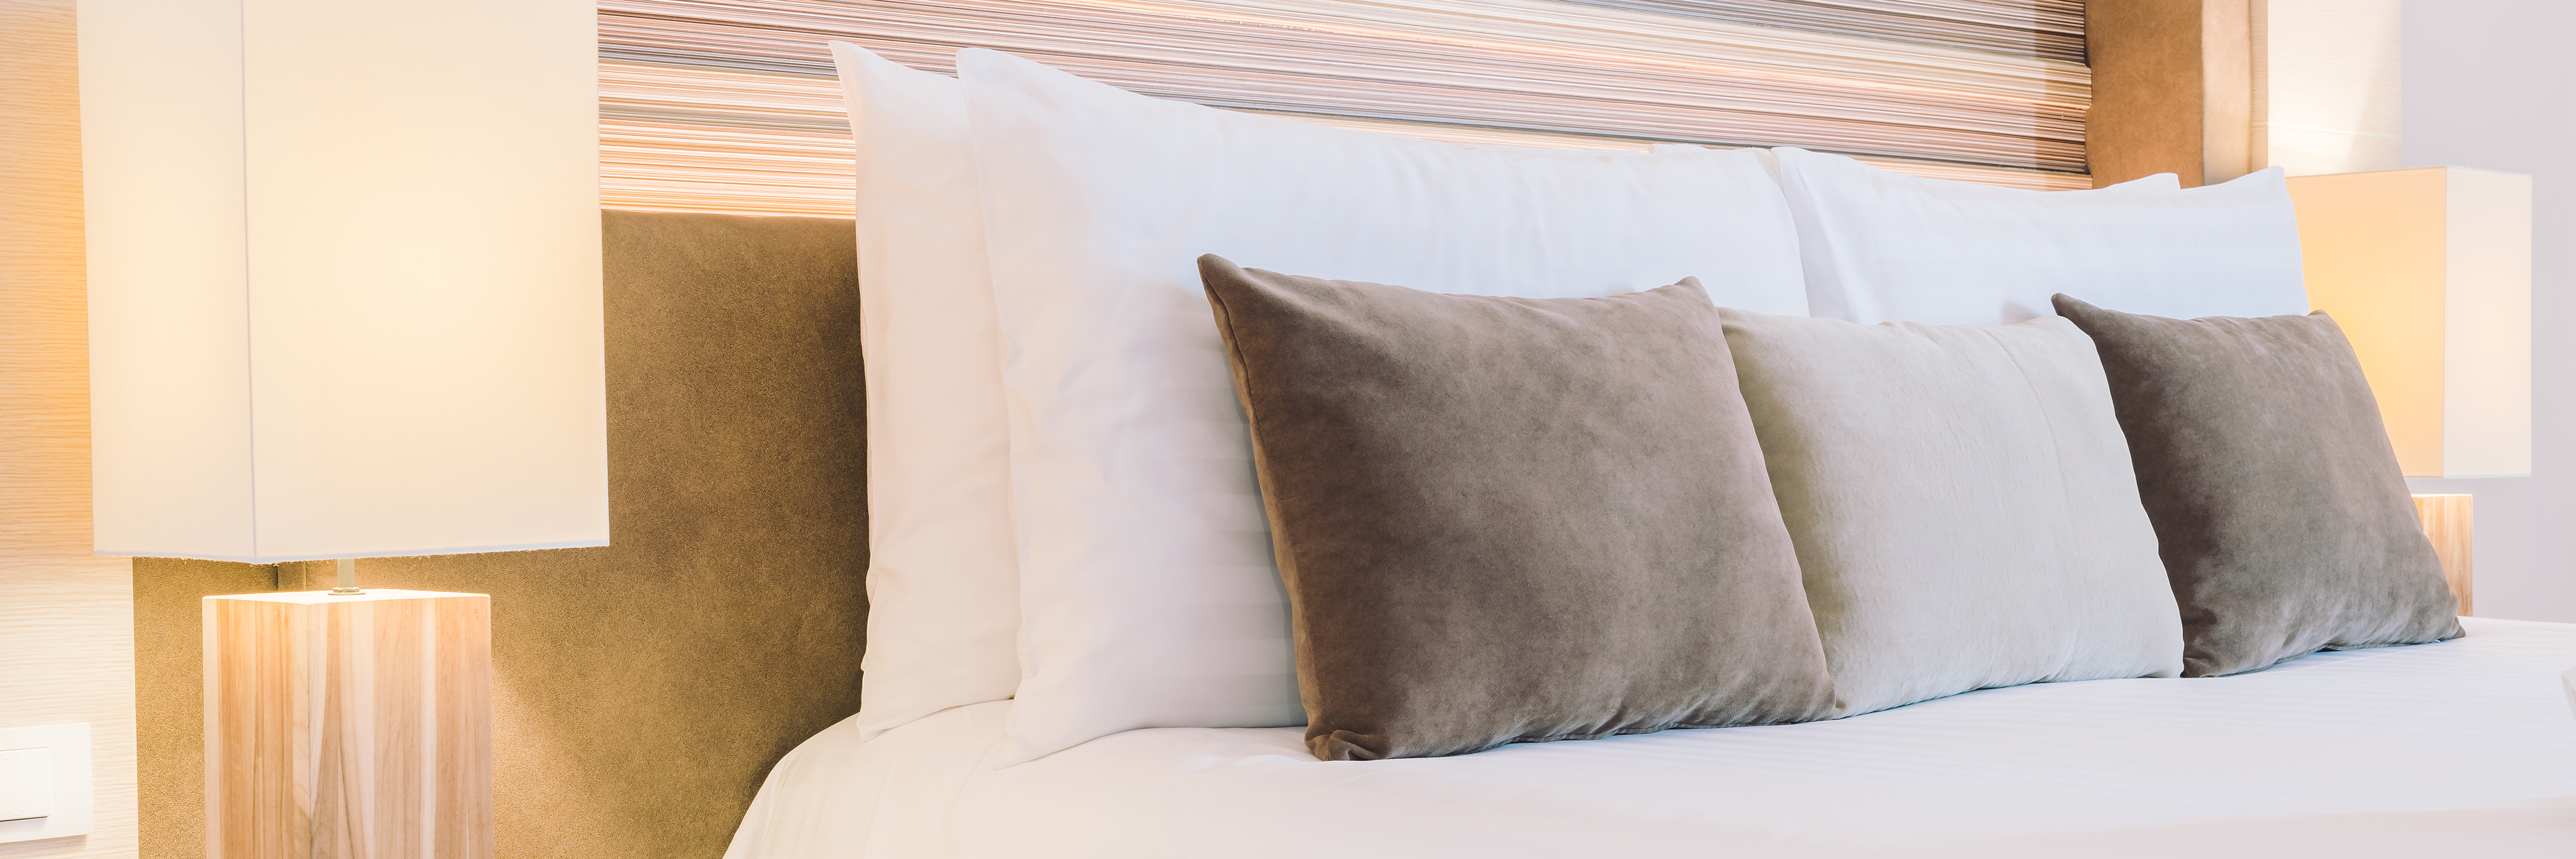 Een bed met kussens en een lamp in een sfeervolle kamer.